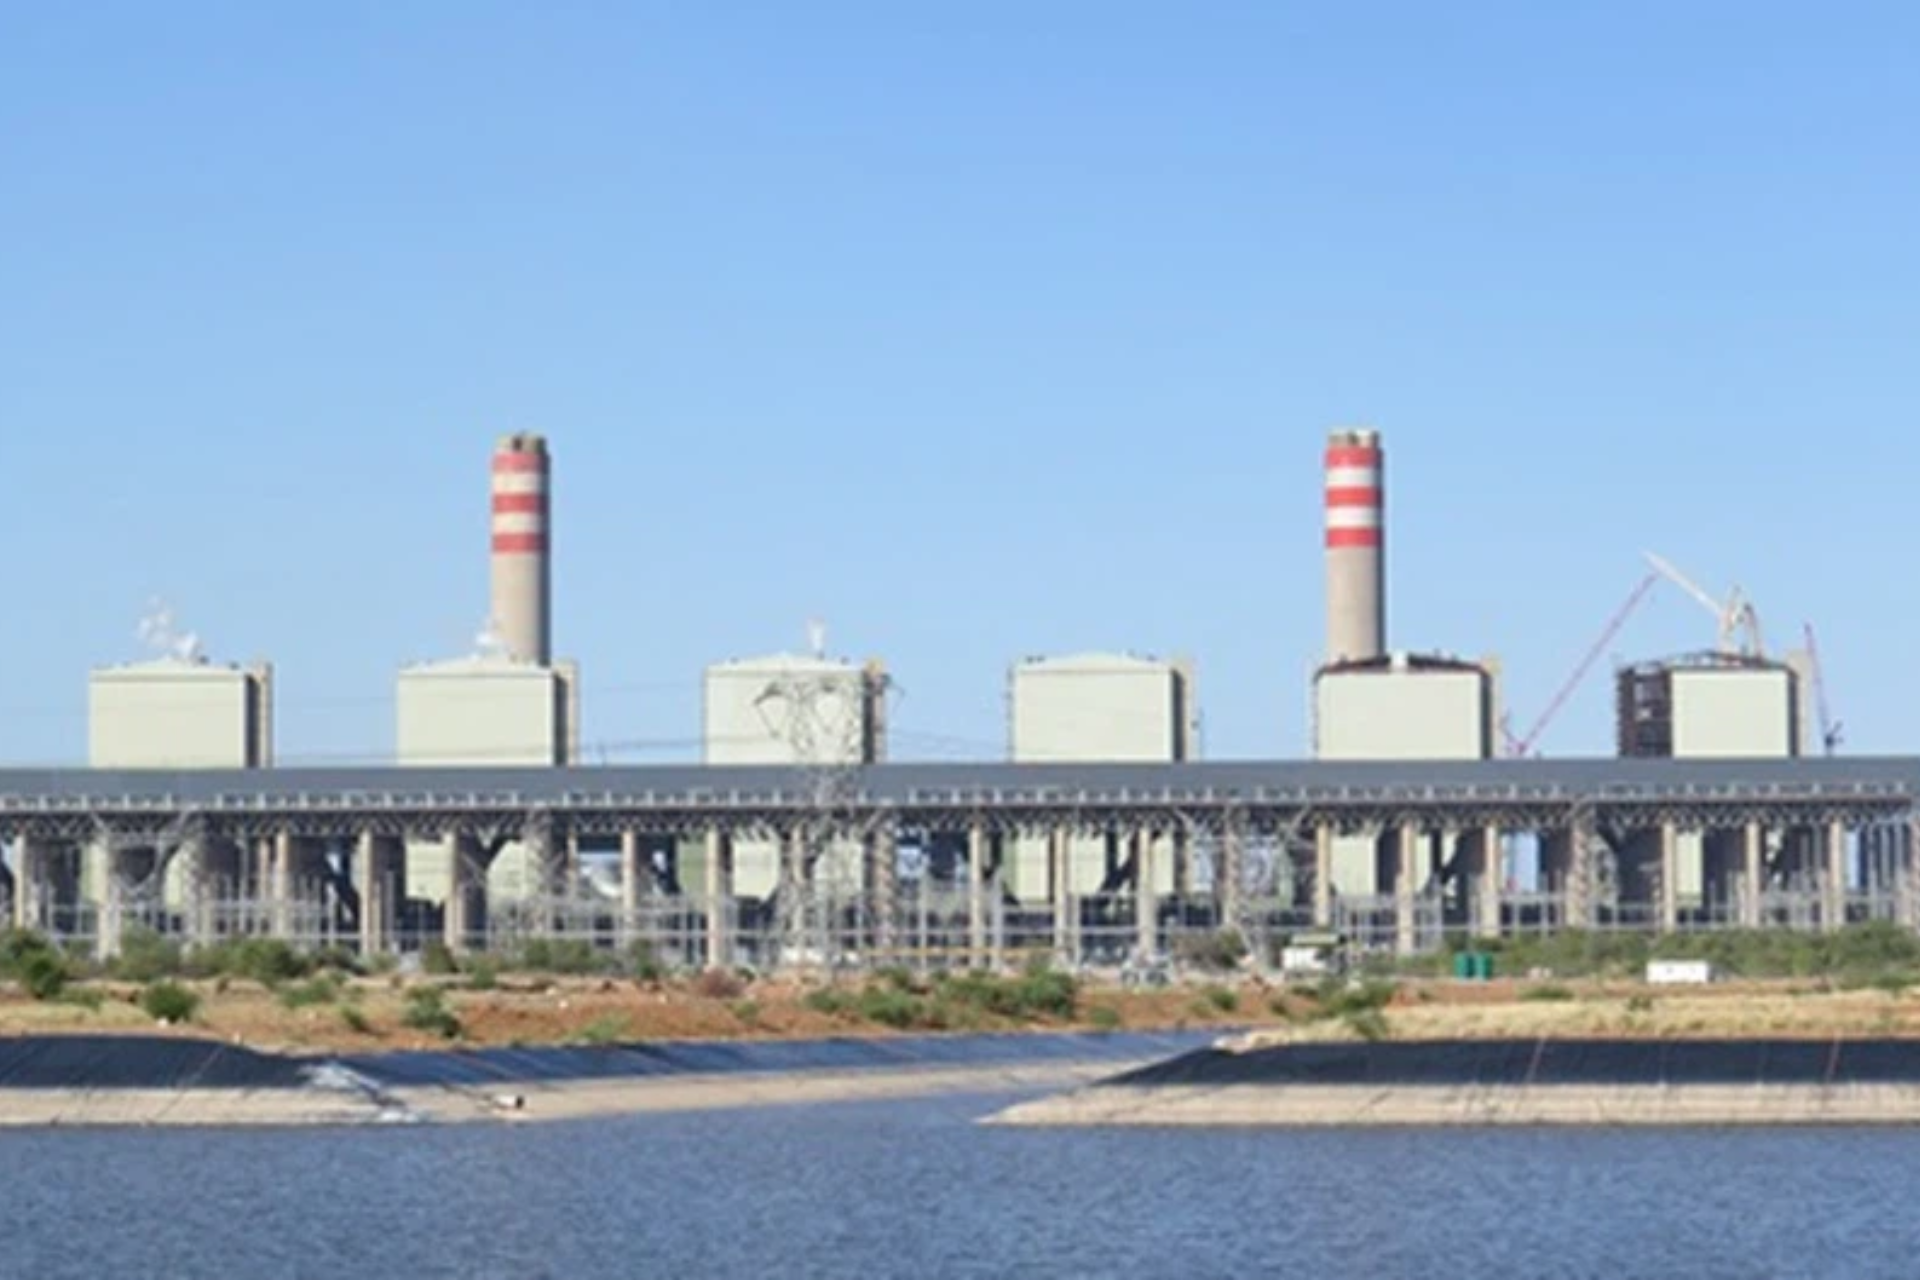 Kusile power station